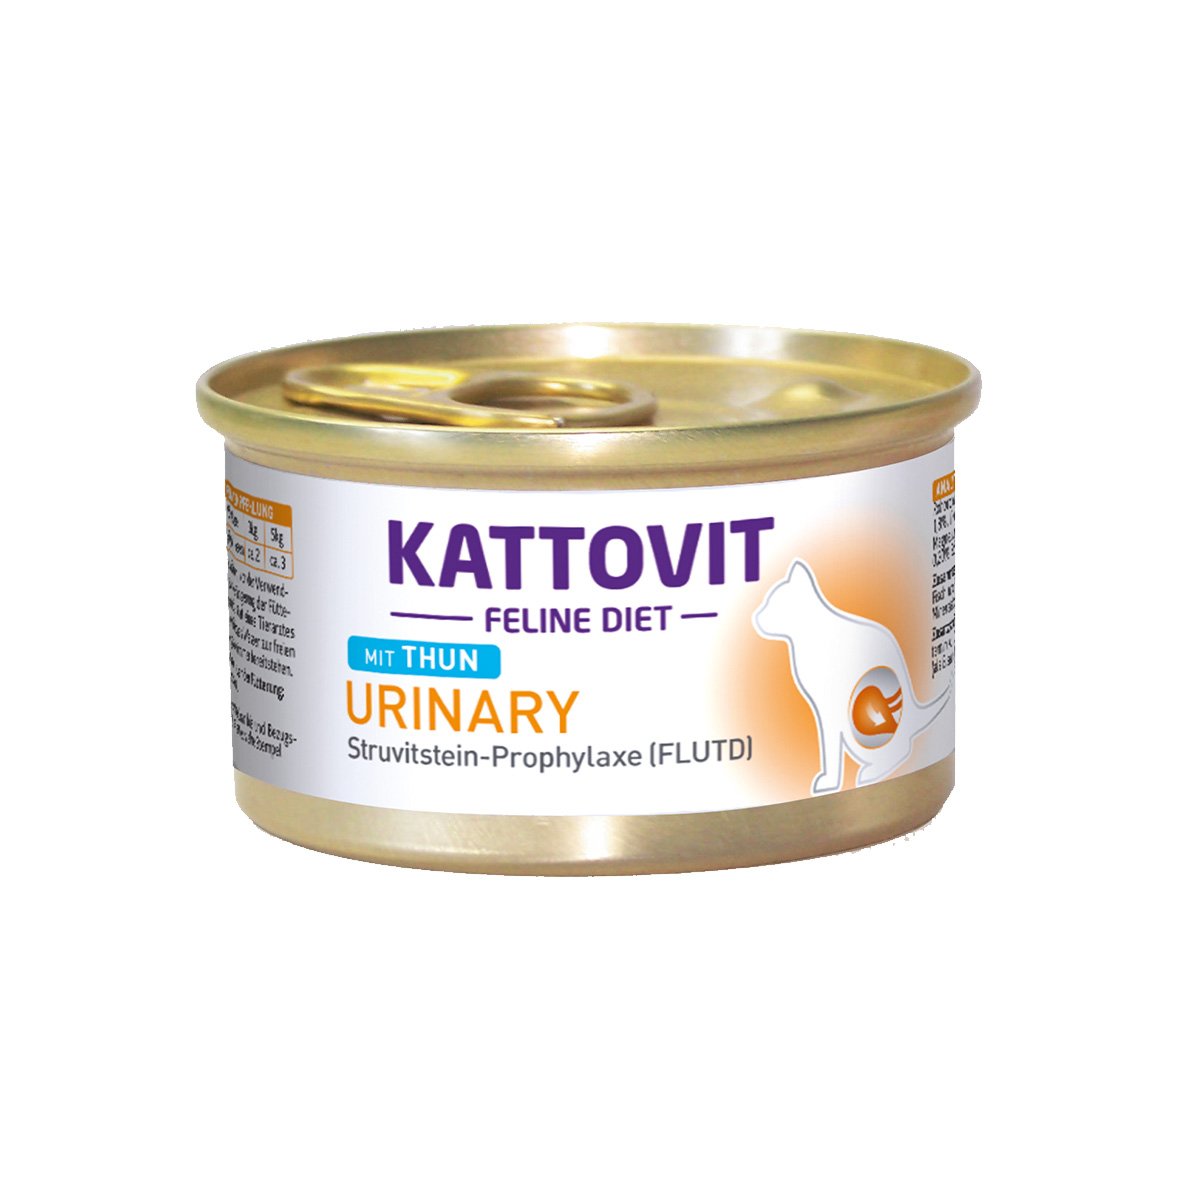 KATTOVIT Feline Diet Urinary Thun 24x85g von Kattovit